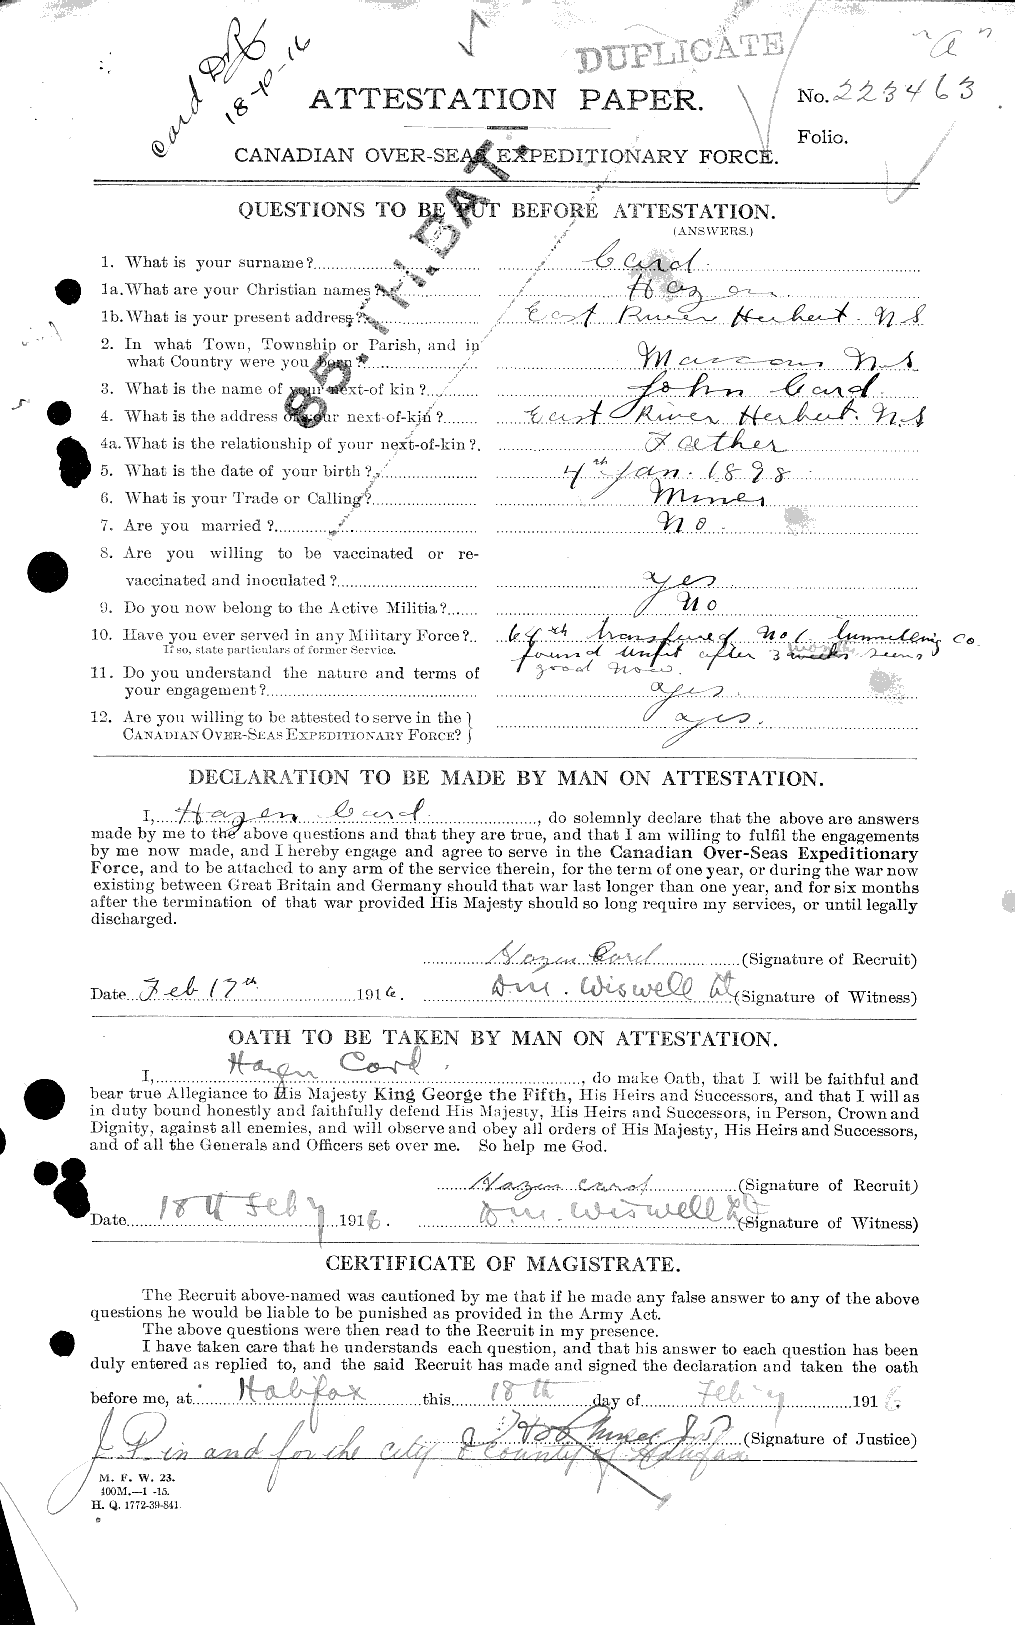 Dossiers du Personnel de la Première Guerre mondiale - CEC 003087a